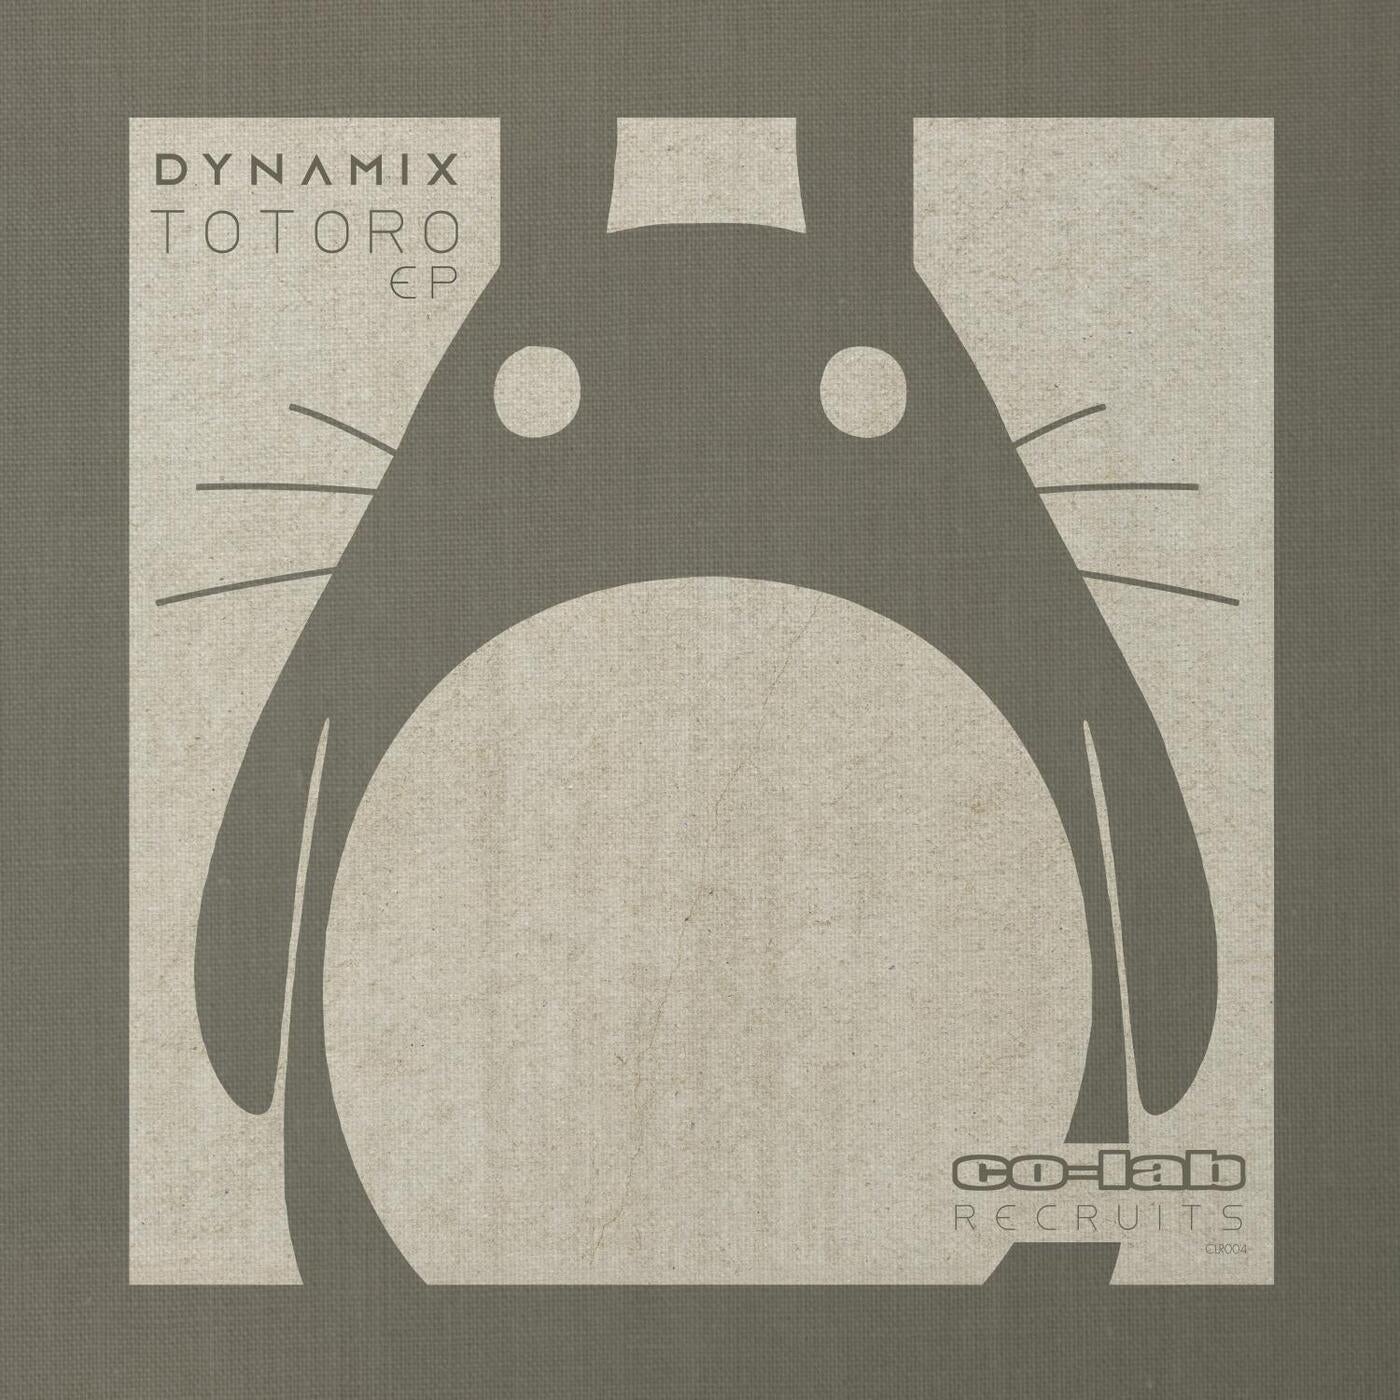 Totoro EP